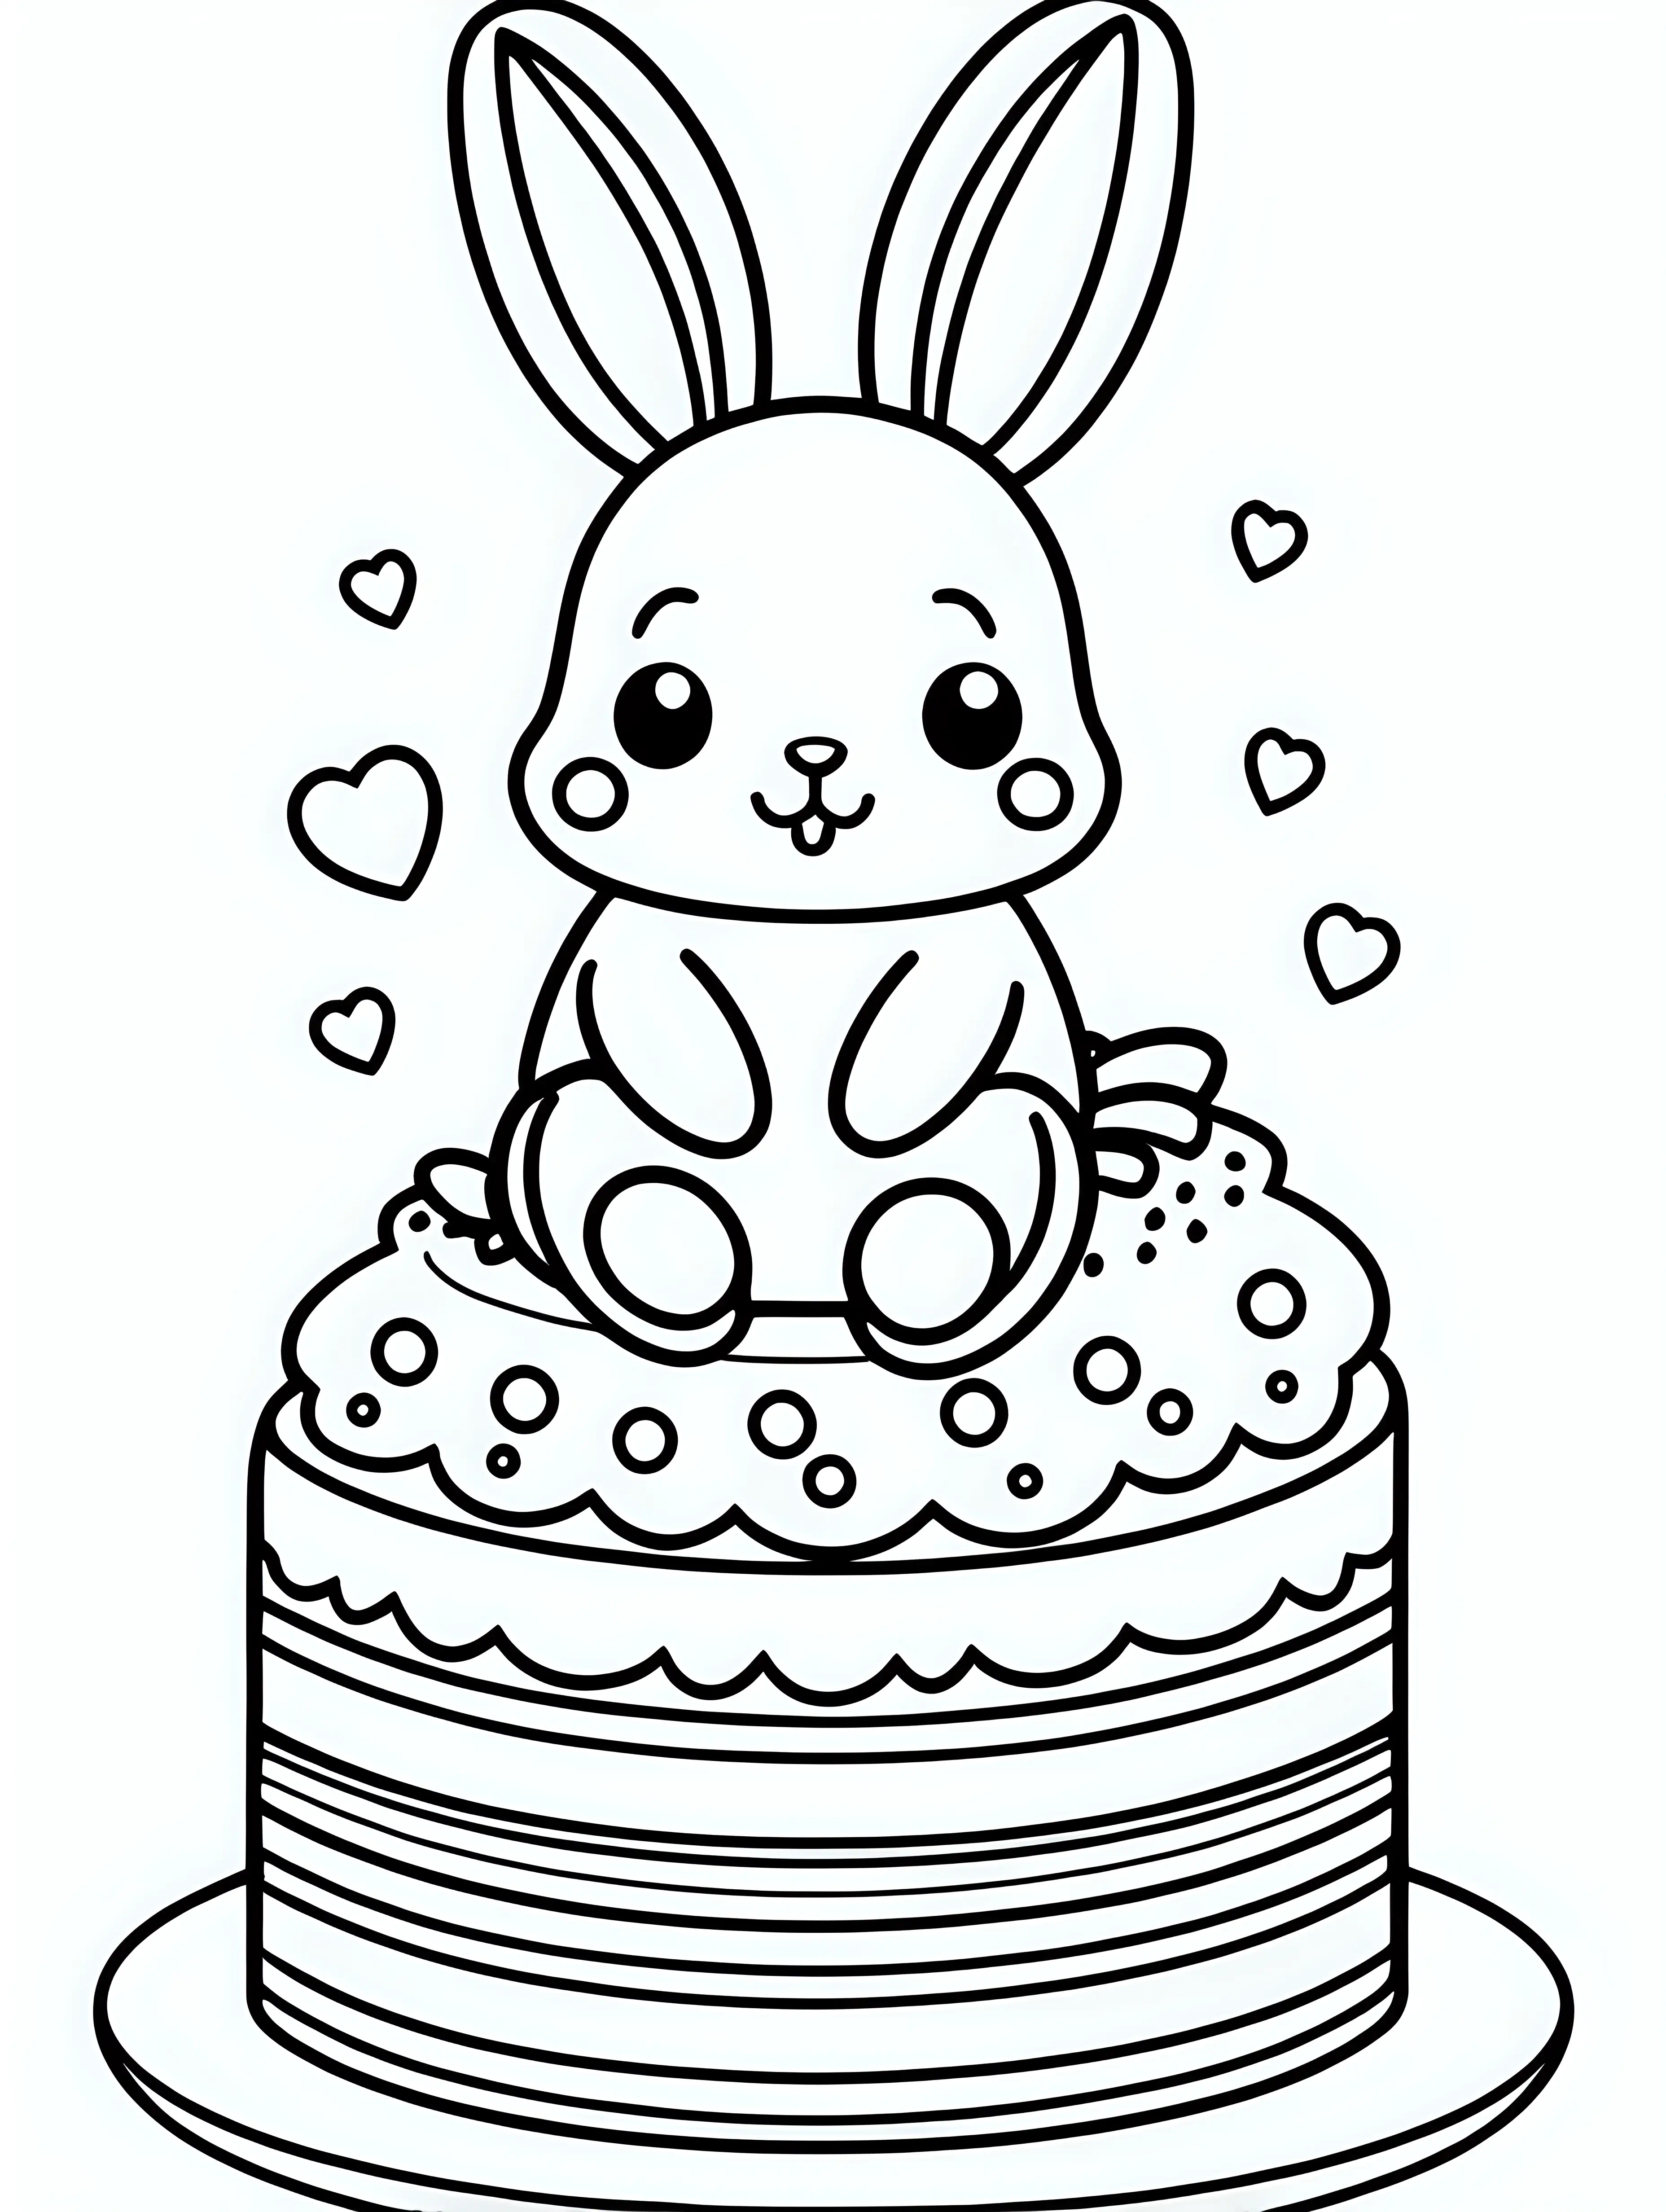 Adorable Kawaii Bunny Coloring Page on Cake Fun Kids Activity